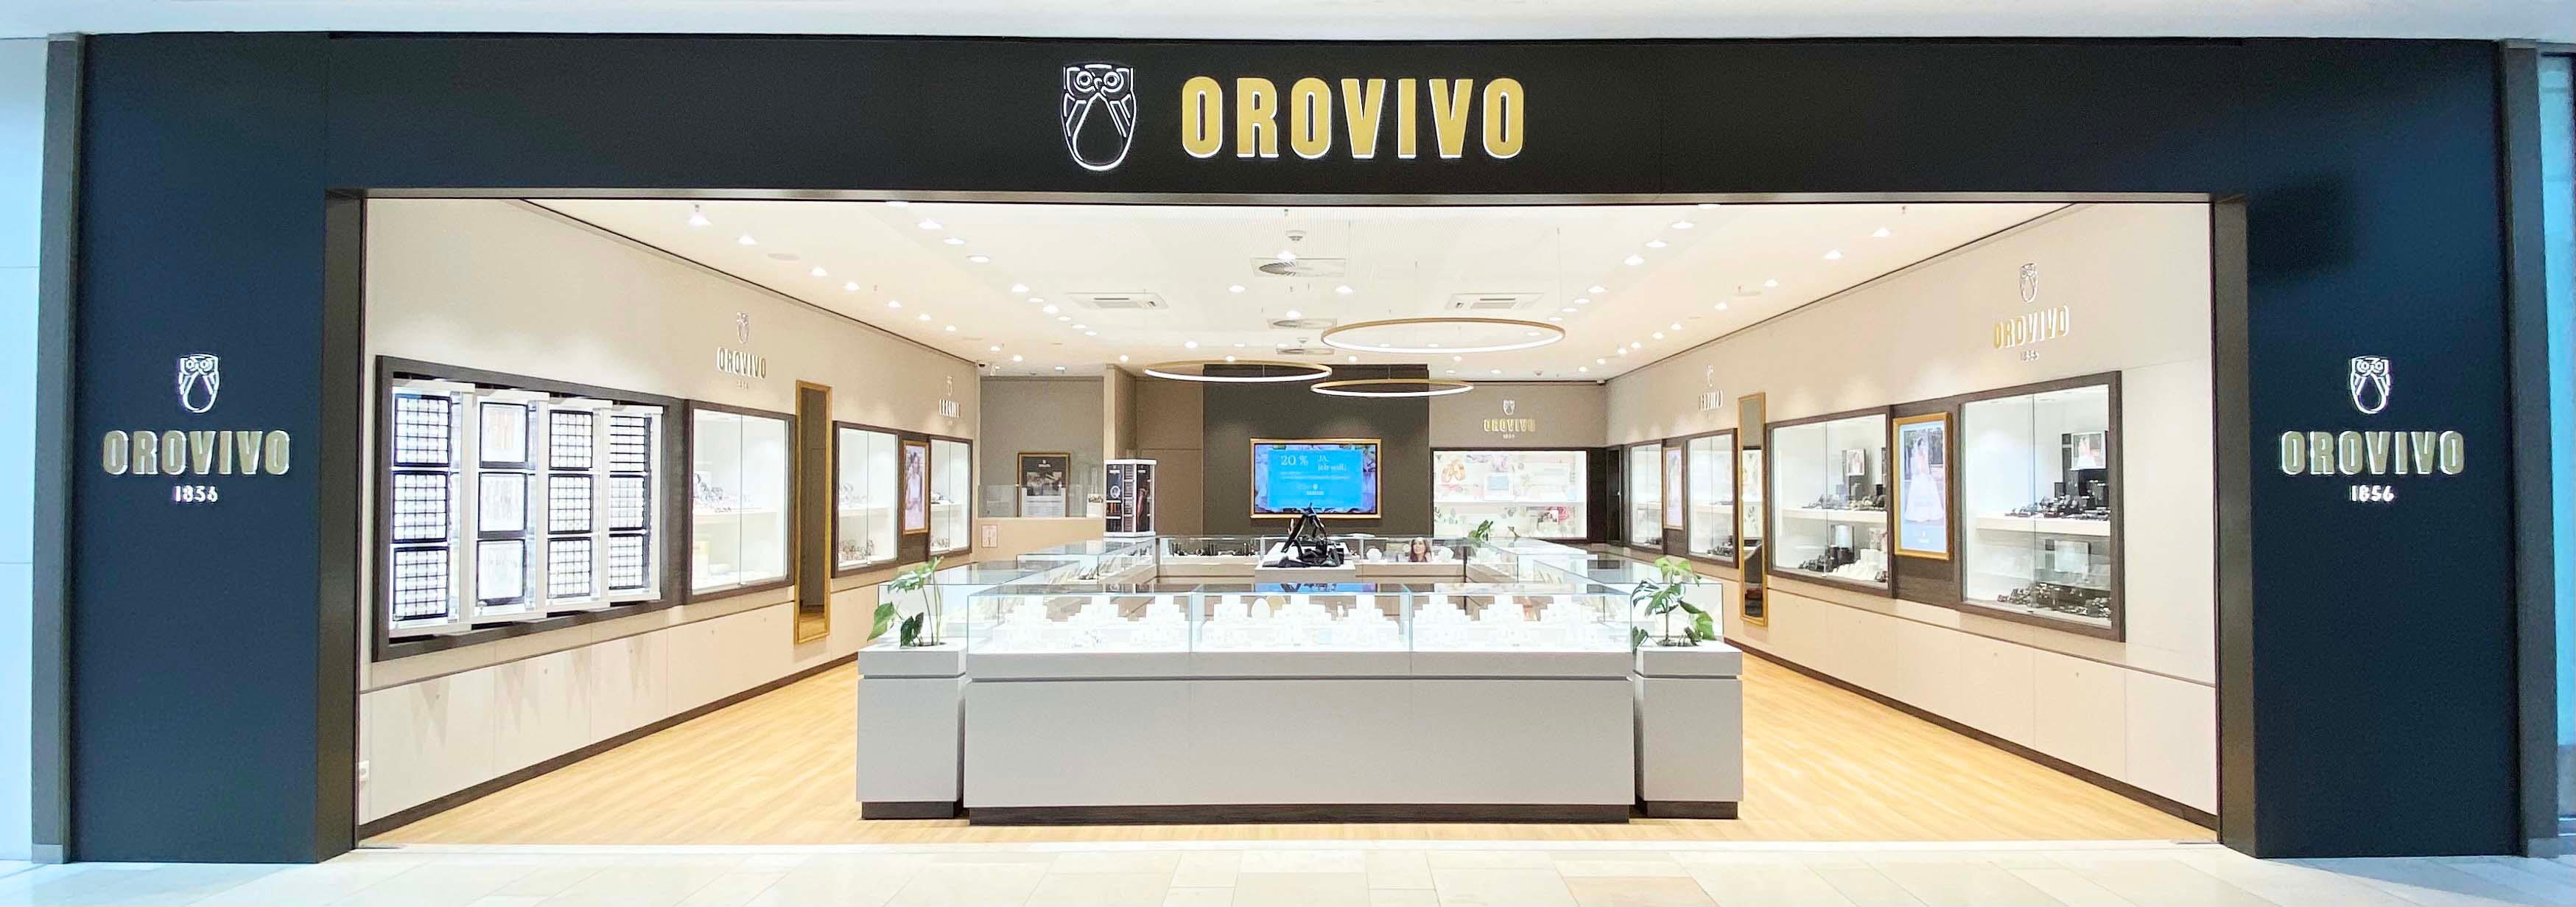 Bild 1 OROVIVO  - Dein Juwelier in Köln